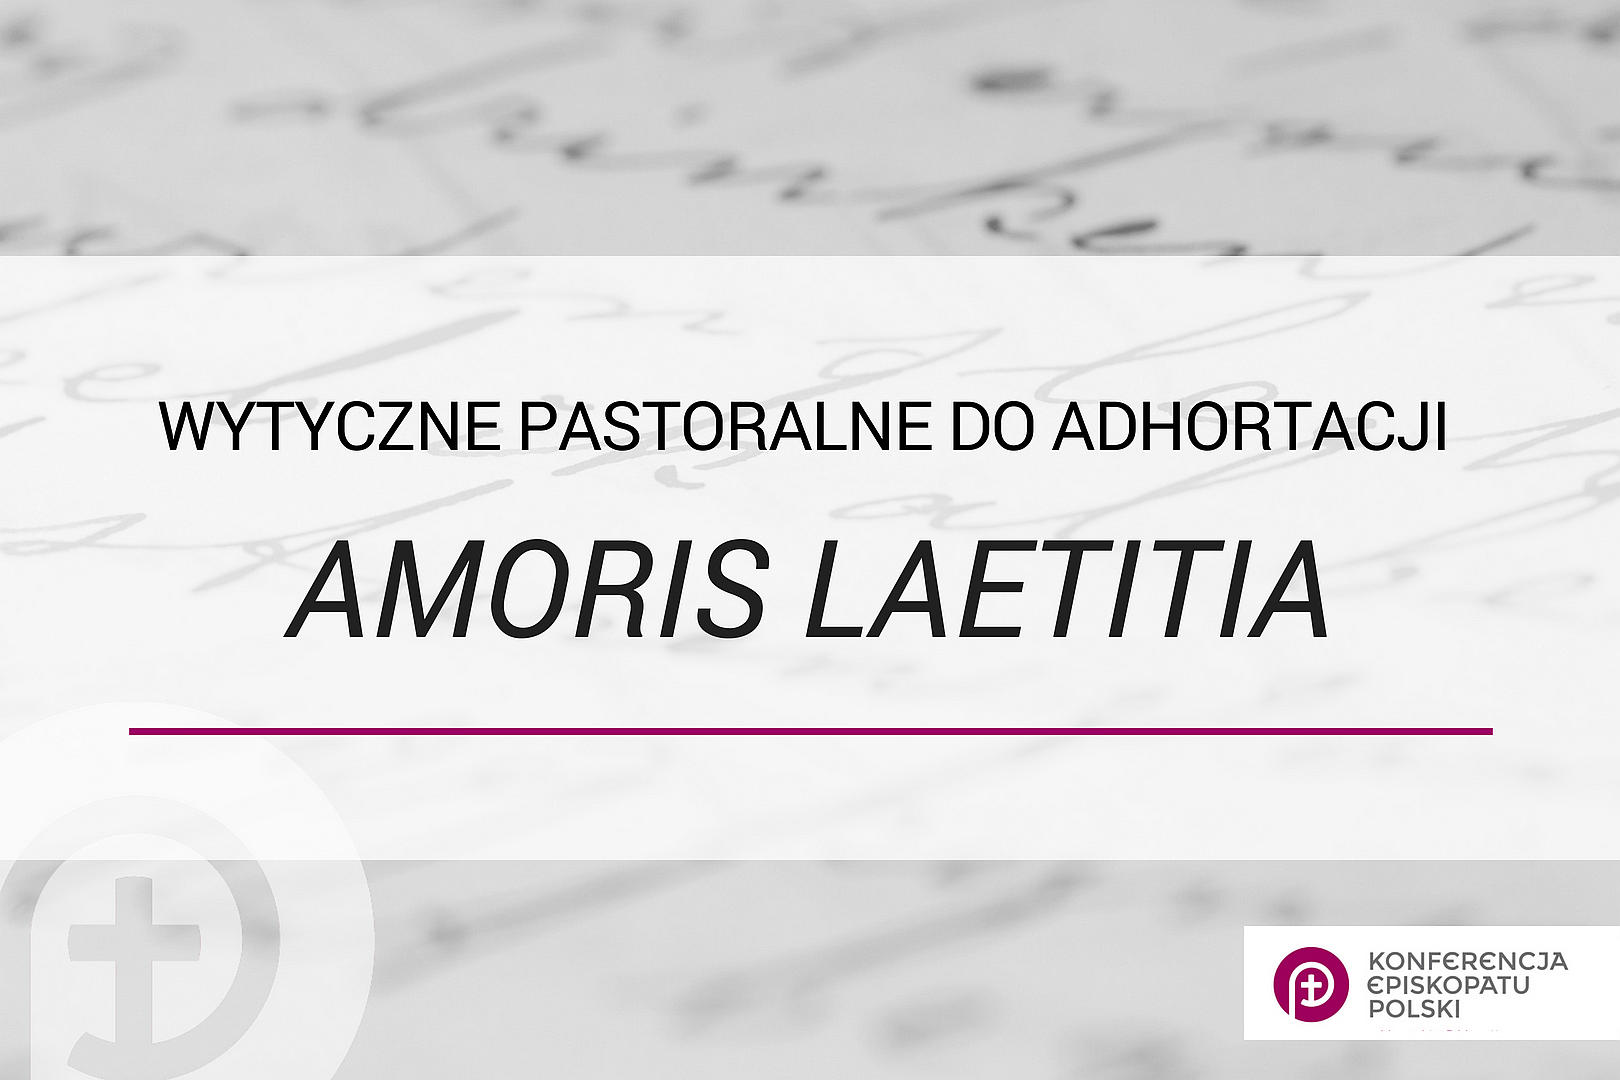 Wytyczne pastoralne do adhortacji Amoris laetitia